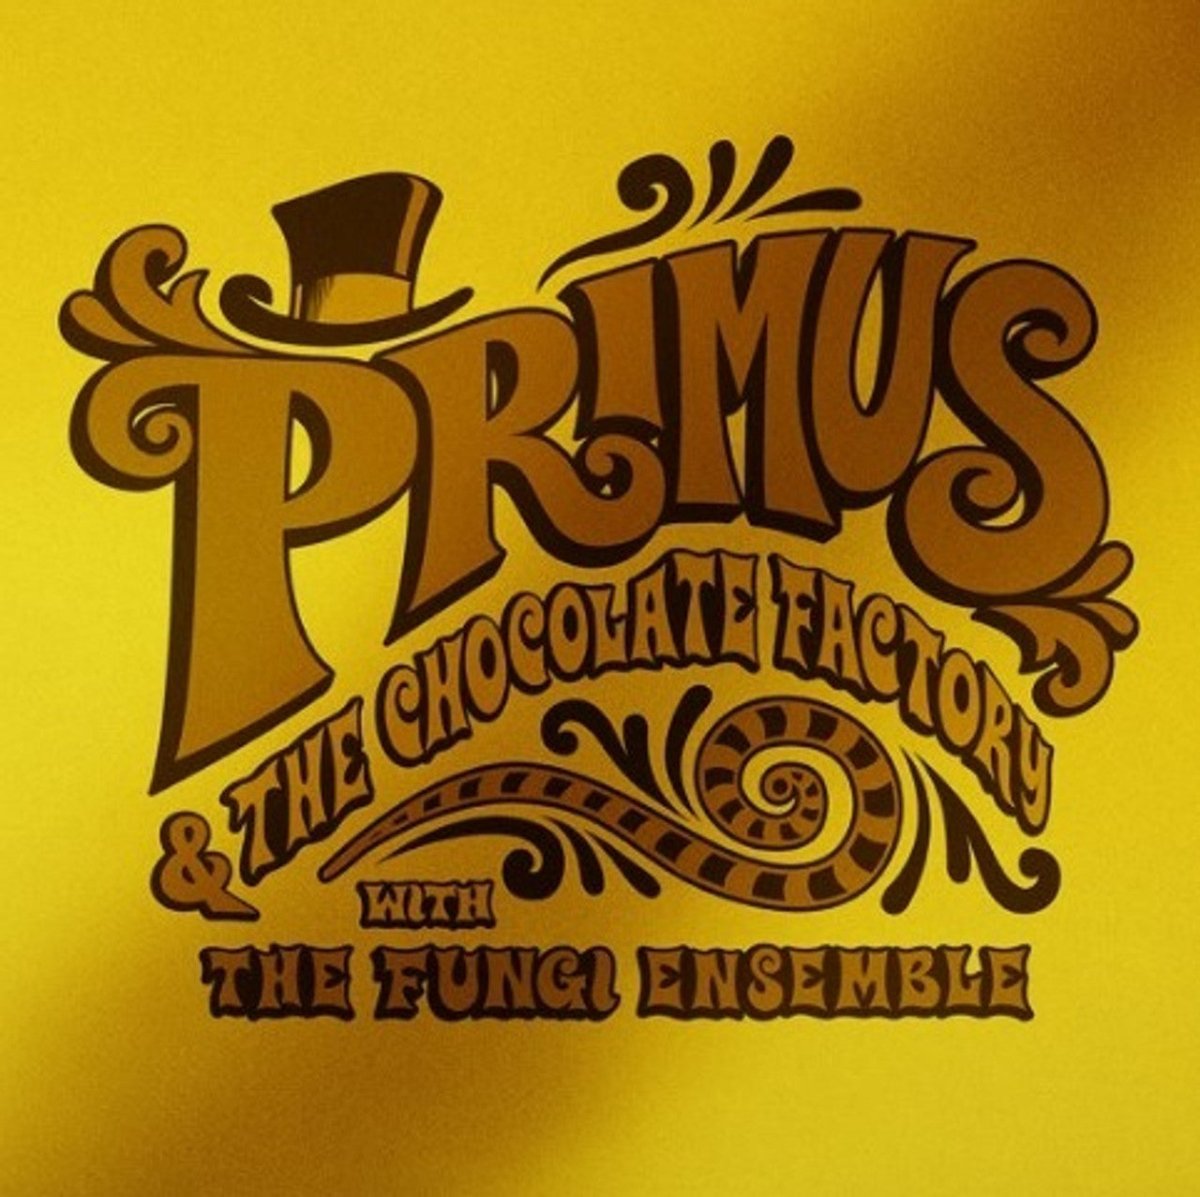 Primus - Primus & The Chocolate Factory With The Fungi Ensemble Vinyl